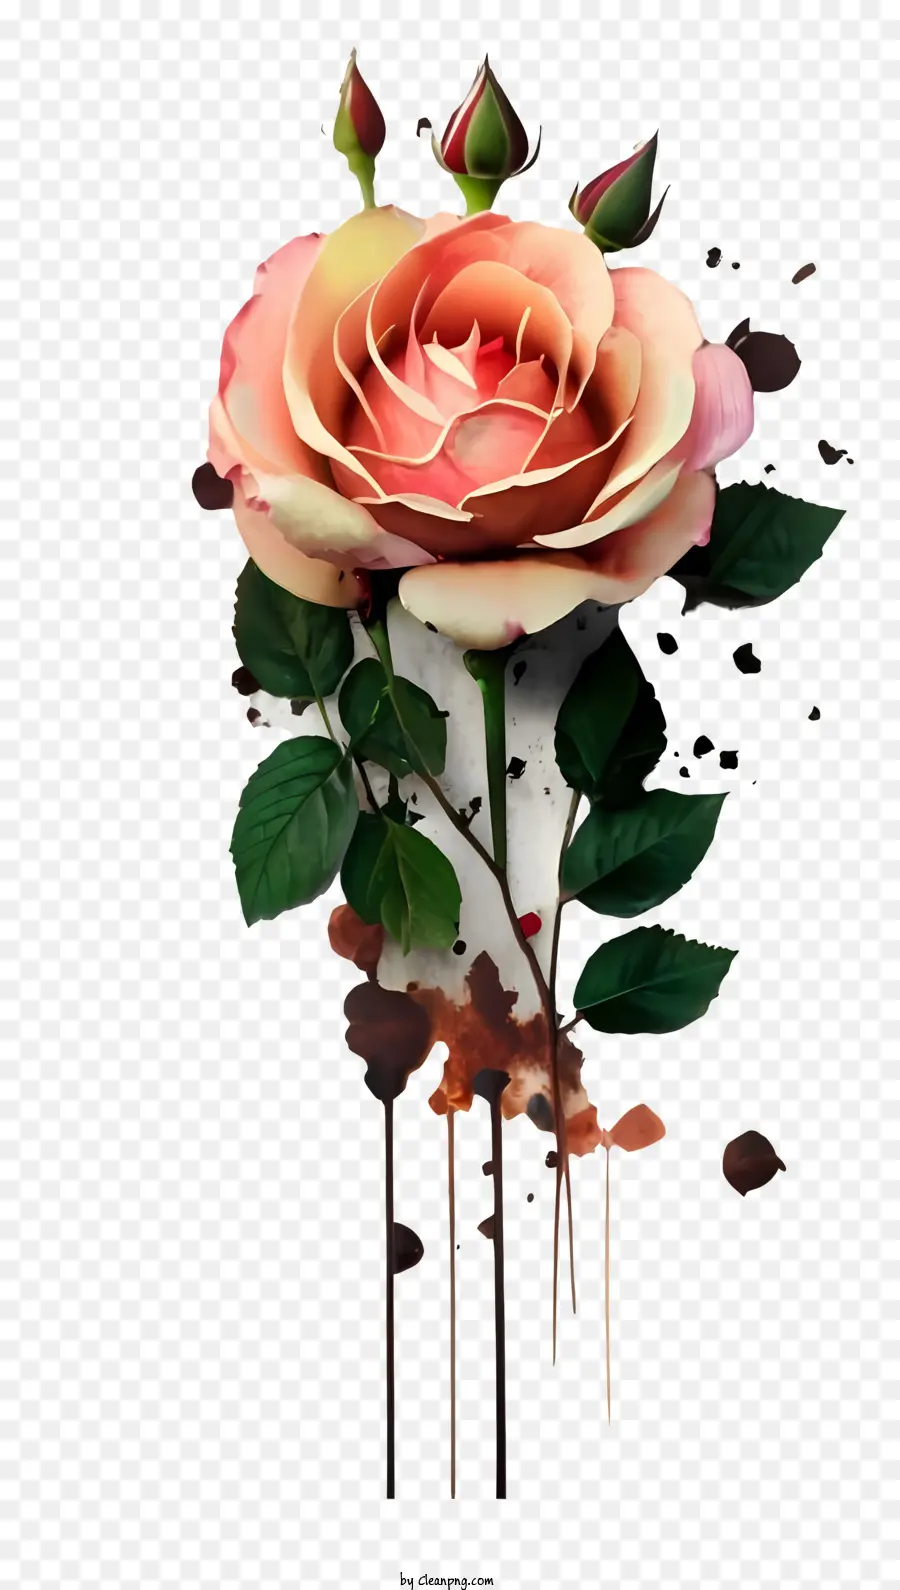 cornice bianca - Rosa aperta con petali rosa e marroni circondati dall'acqua, incorniciati dal bianco e nero